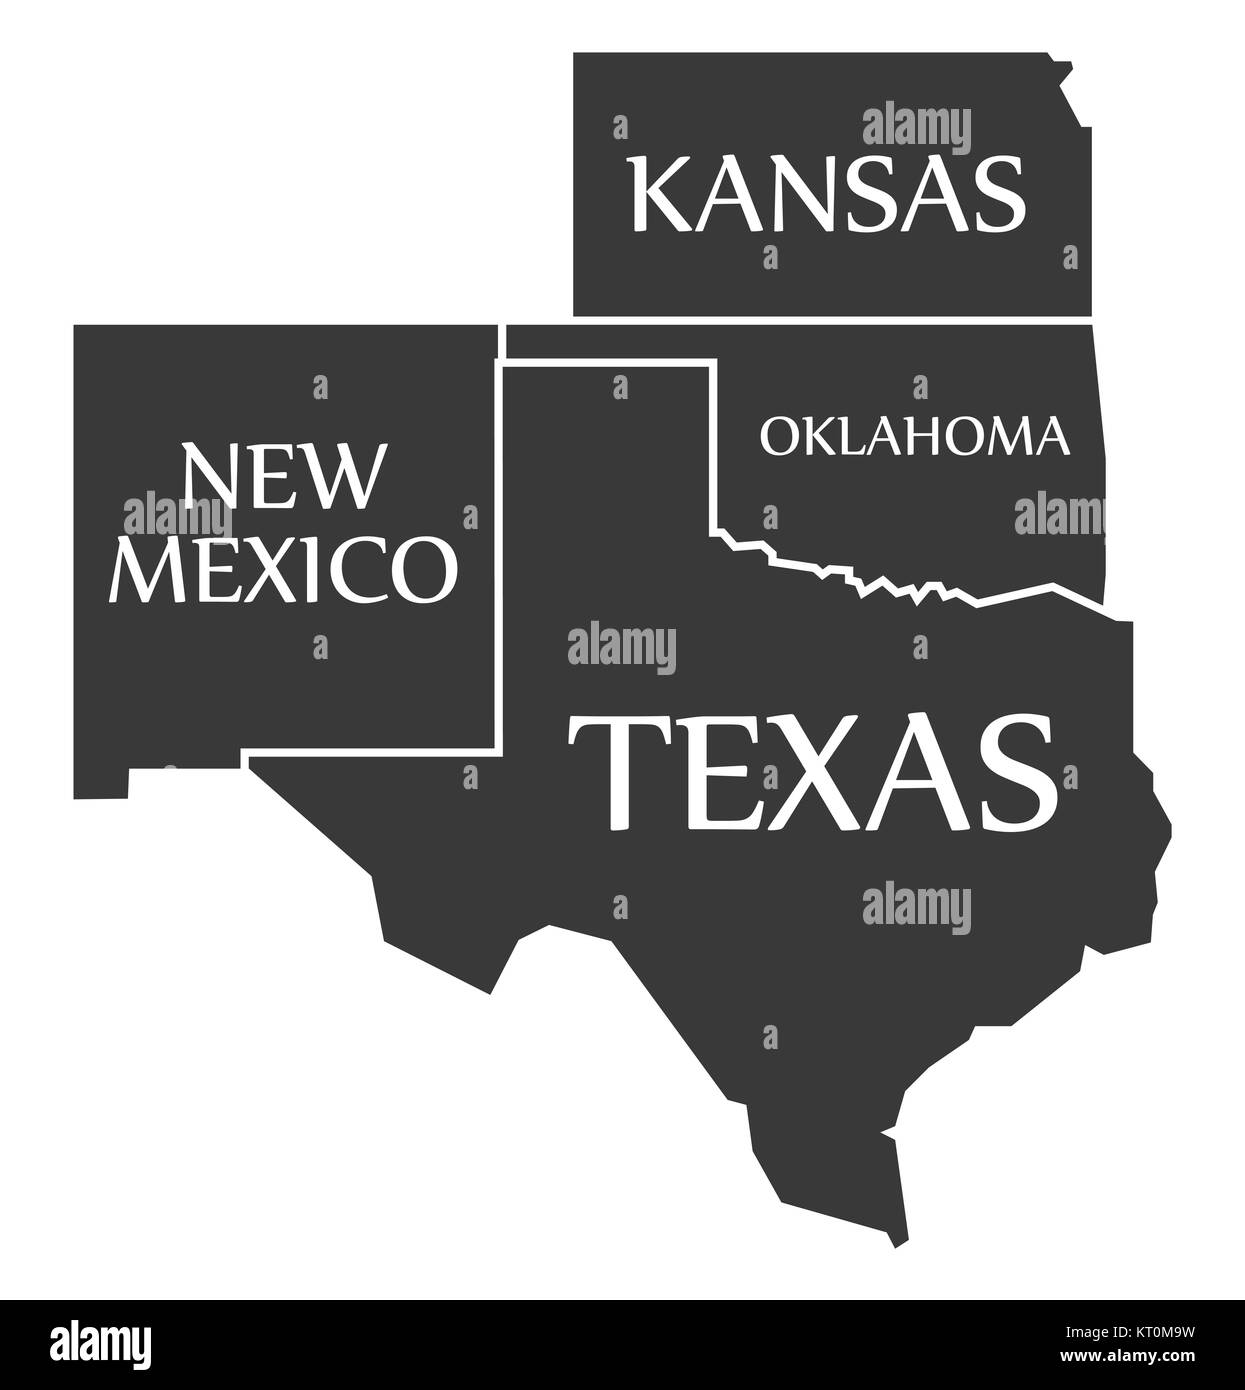 New Mexico - Kansas - Oklahoma - Texas labelled black Stock Photo